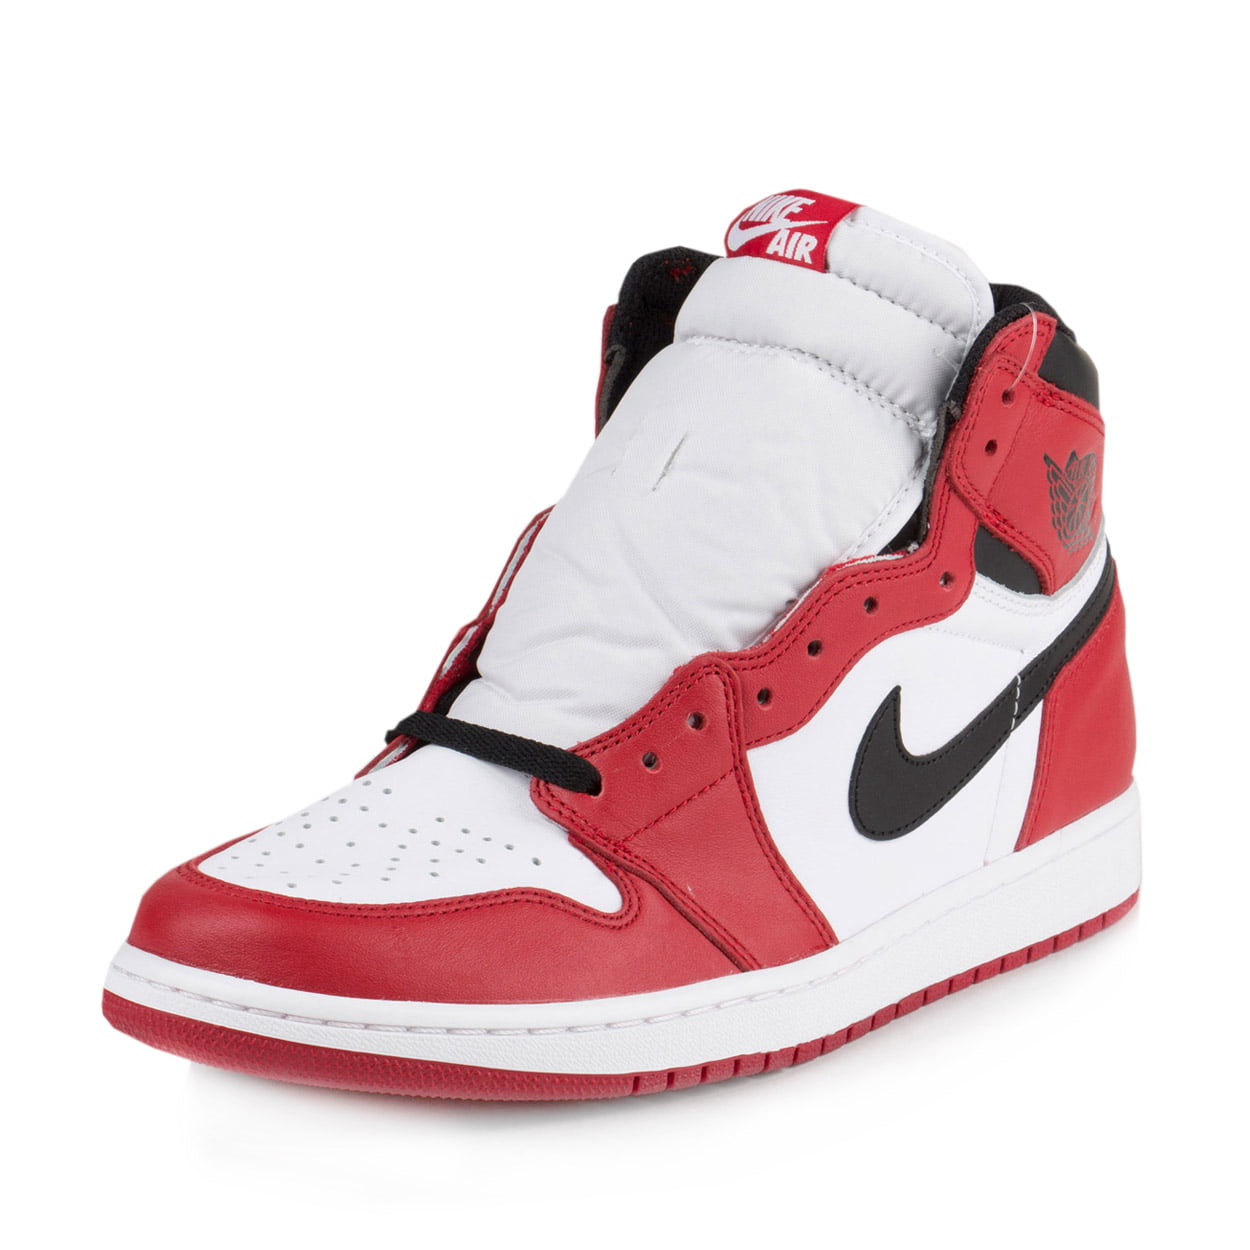 Buy Air Jordan 1 Retro High OG 'Chicago' 2015 - 555088 101